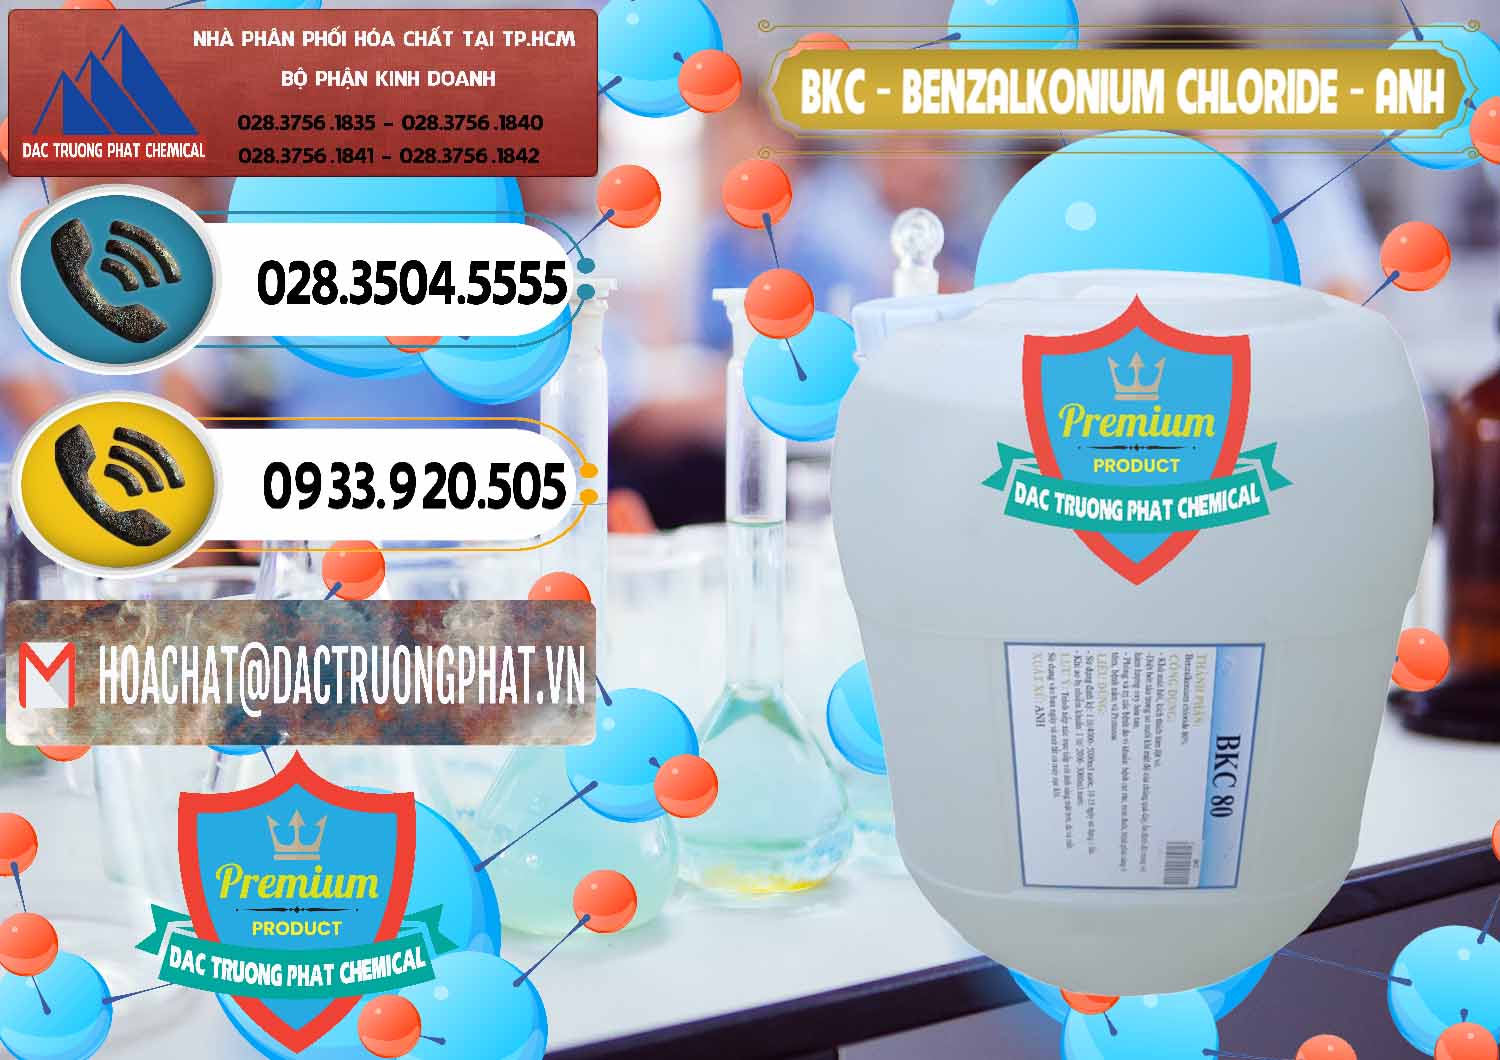 Đơn vị chuyên kinh doanh và bán BKC - Benzalkonium Chloride Anh Quốc Uk Kingdoms - 0415 - Chuyên phân phối & cung cấp hóa chất tại TP.HCM - hoachatdetnhuom.vn